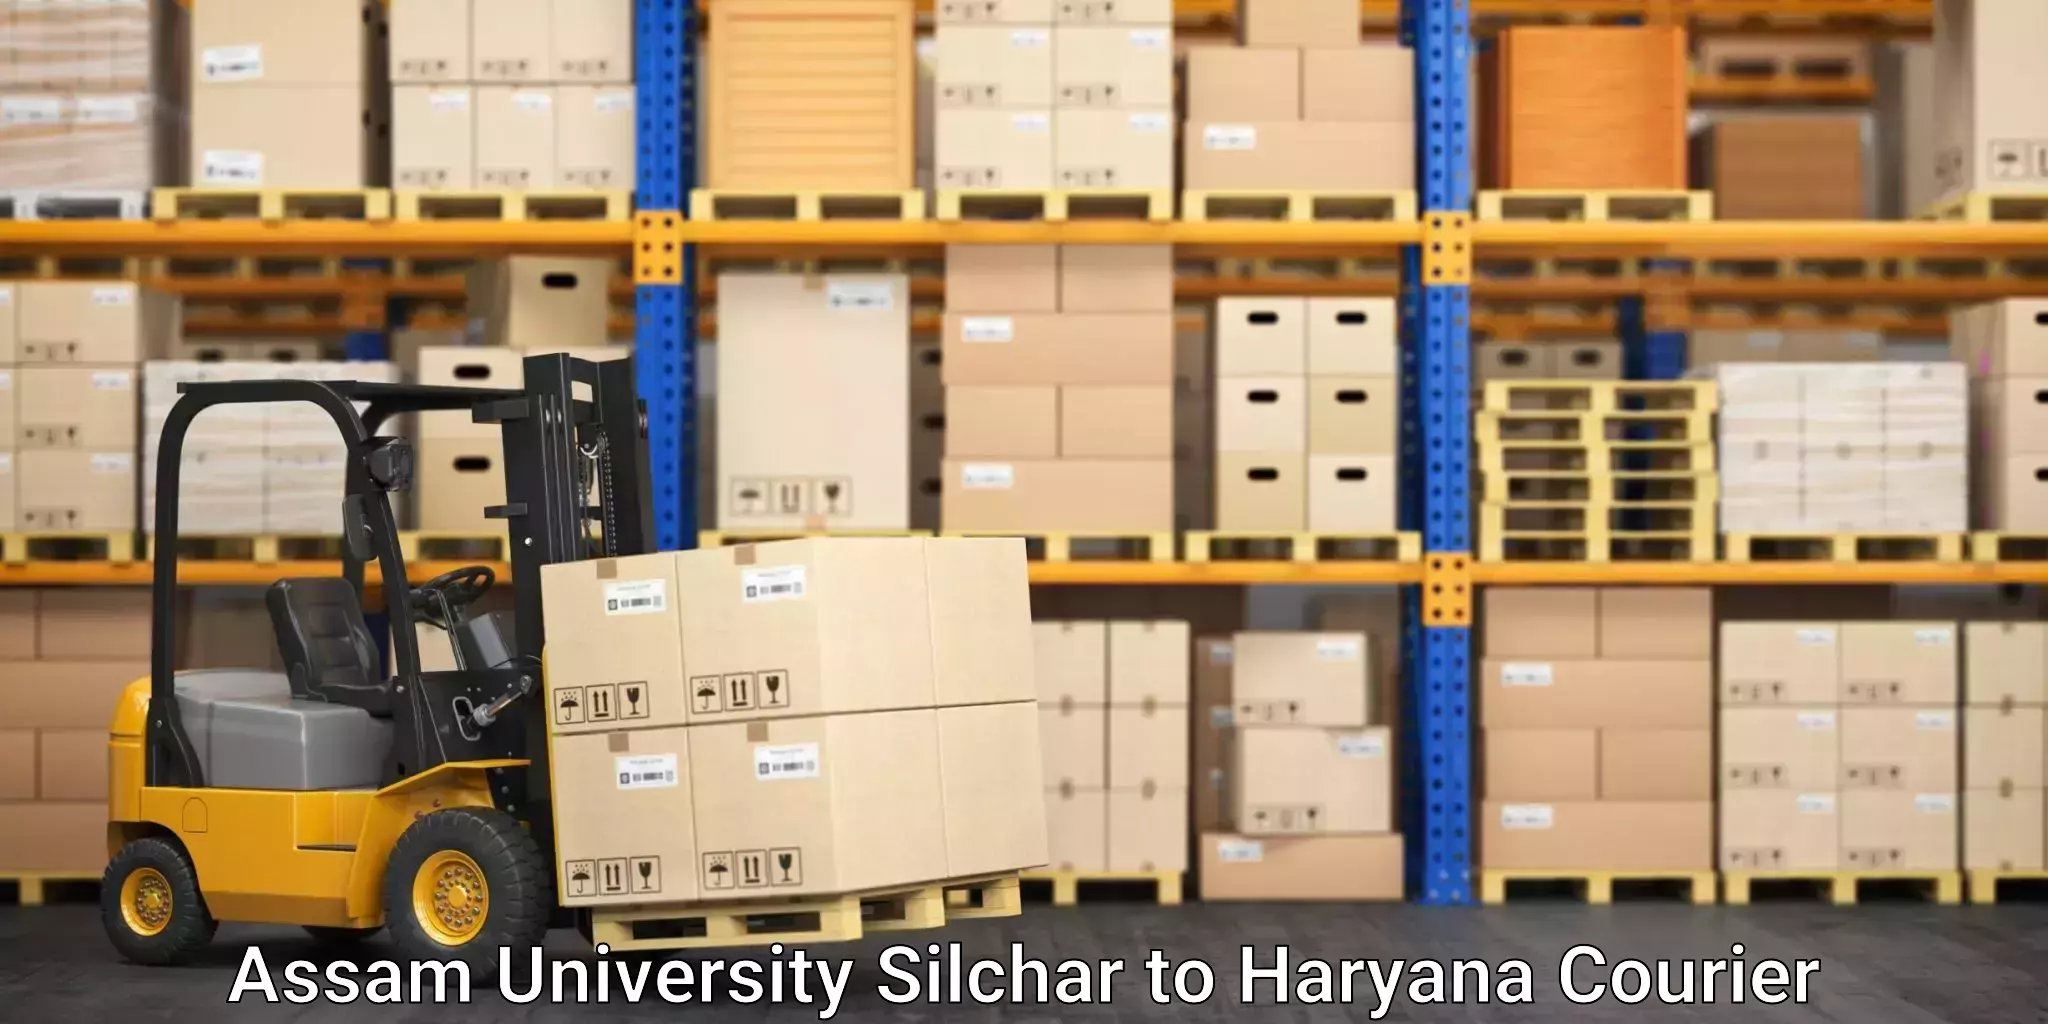 International parcel service Assam University Silchar to Panchkula